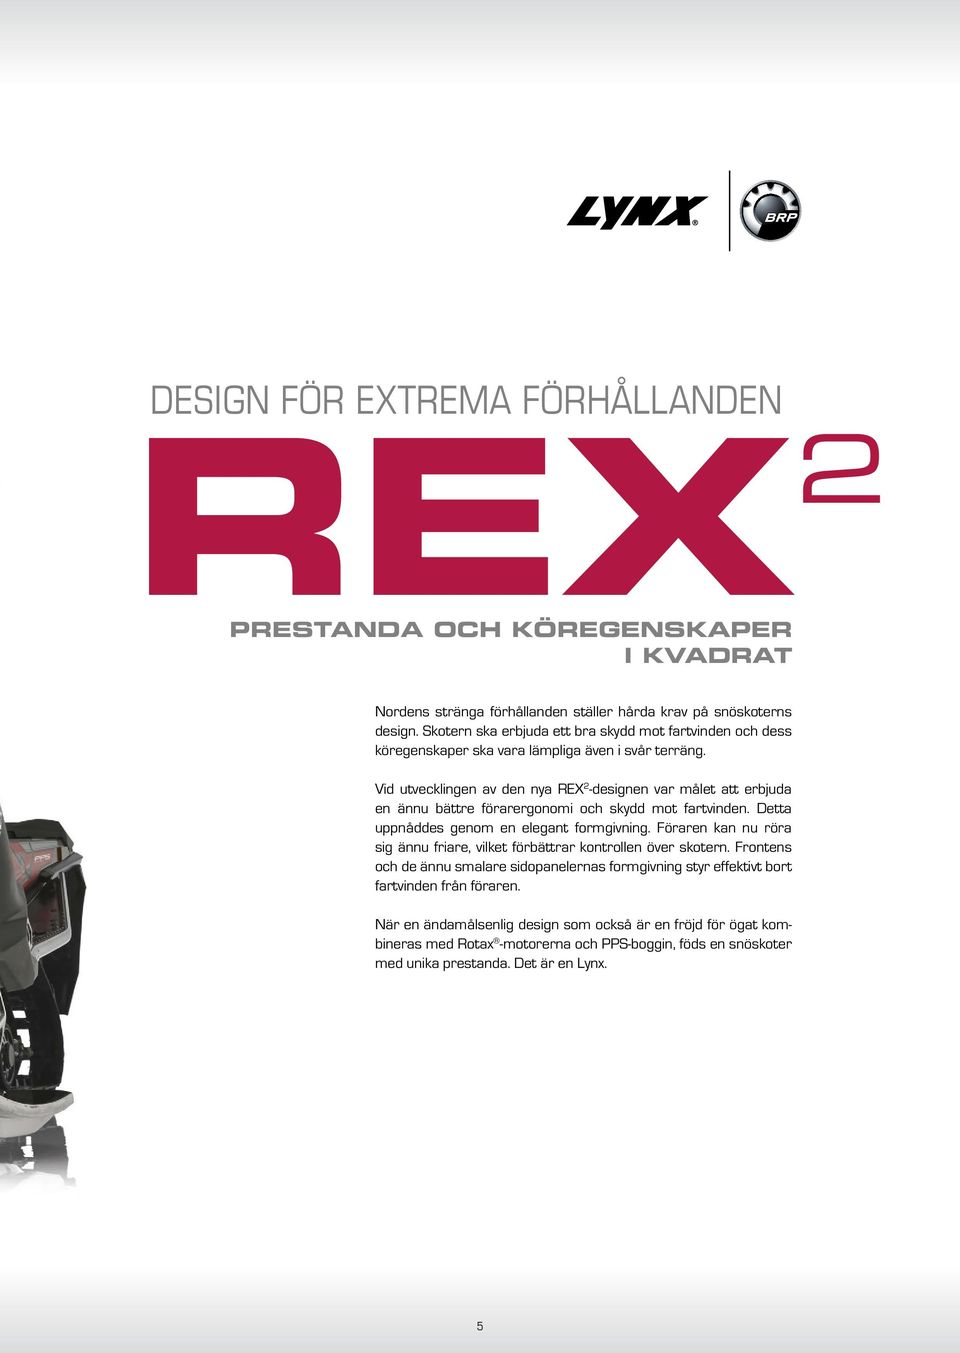 Vid utvecklingen av den nya REX 2 -designen var målet att erbjuda en ännu bättre förarergonomi och skydd mot fartvinden. Detta uppnåddes genom en elegant formgivning.